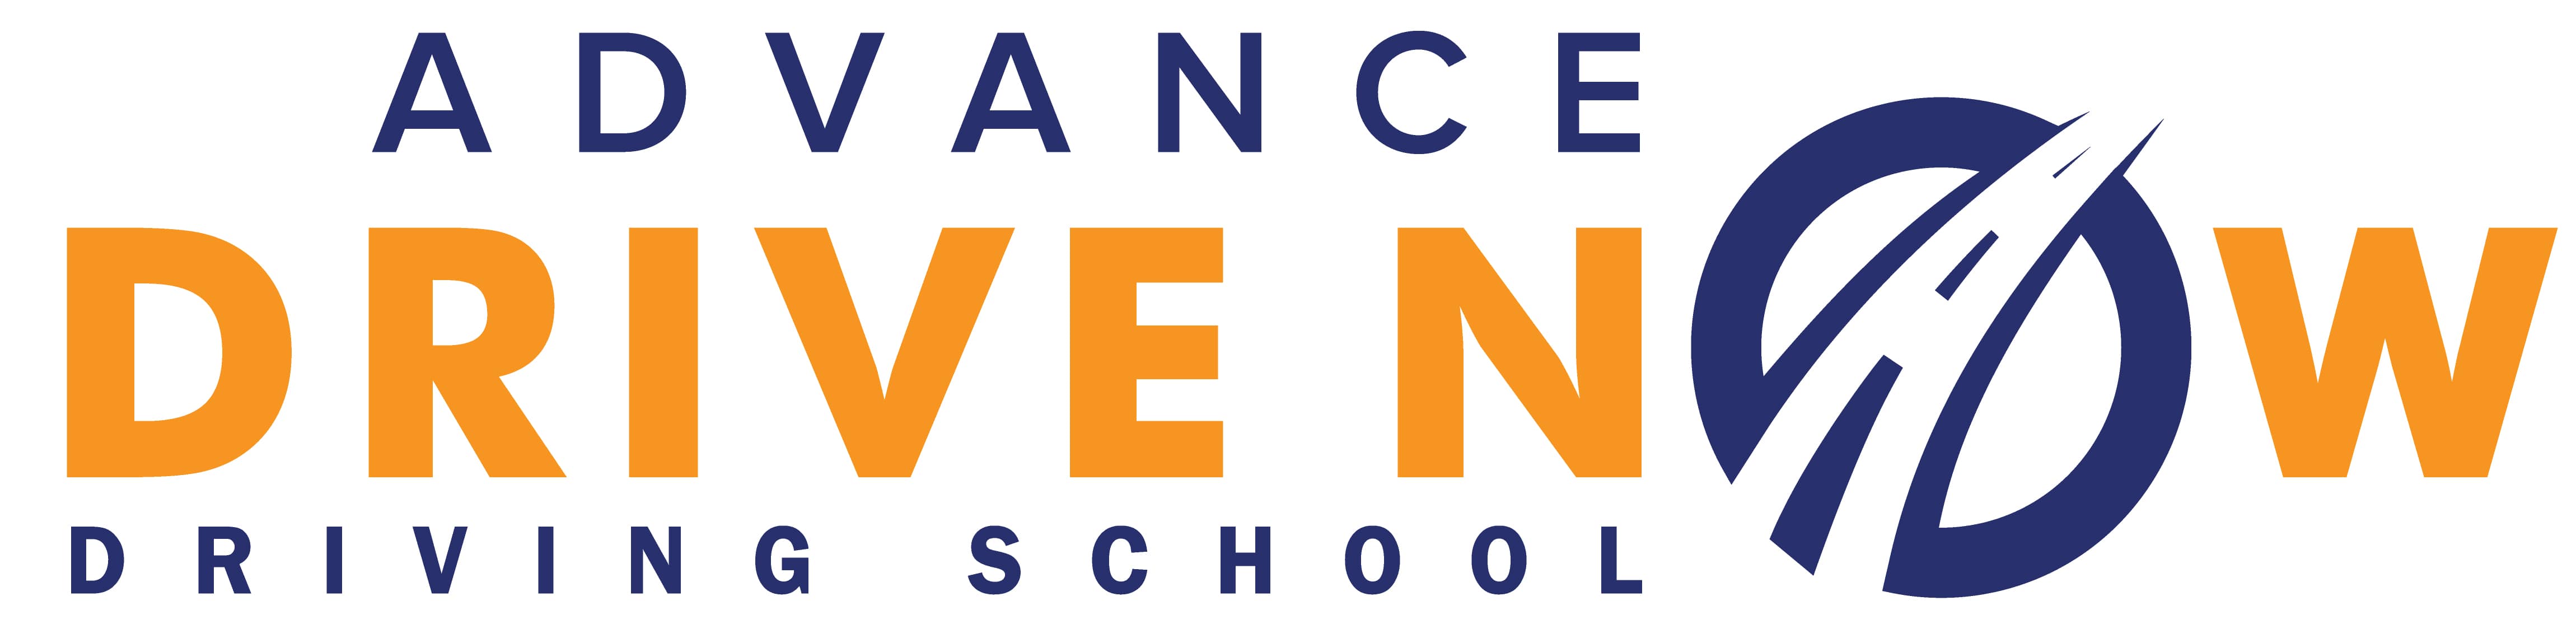 Advance Drive Now Logo